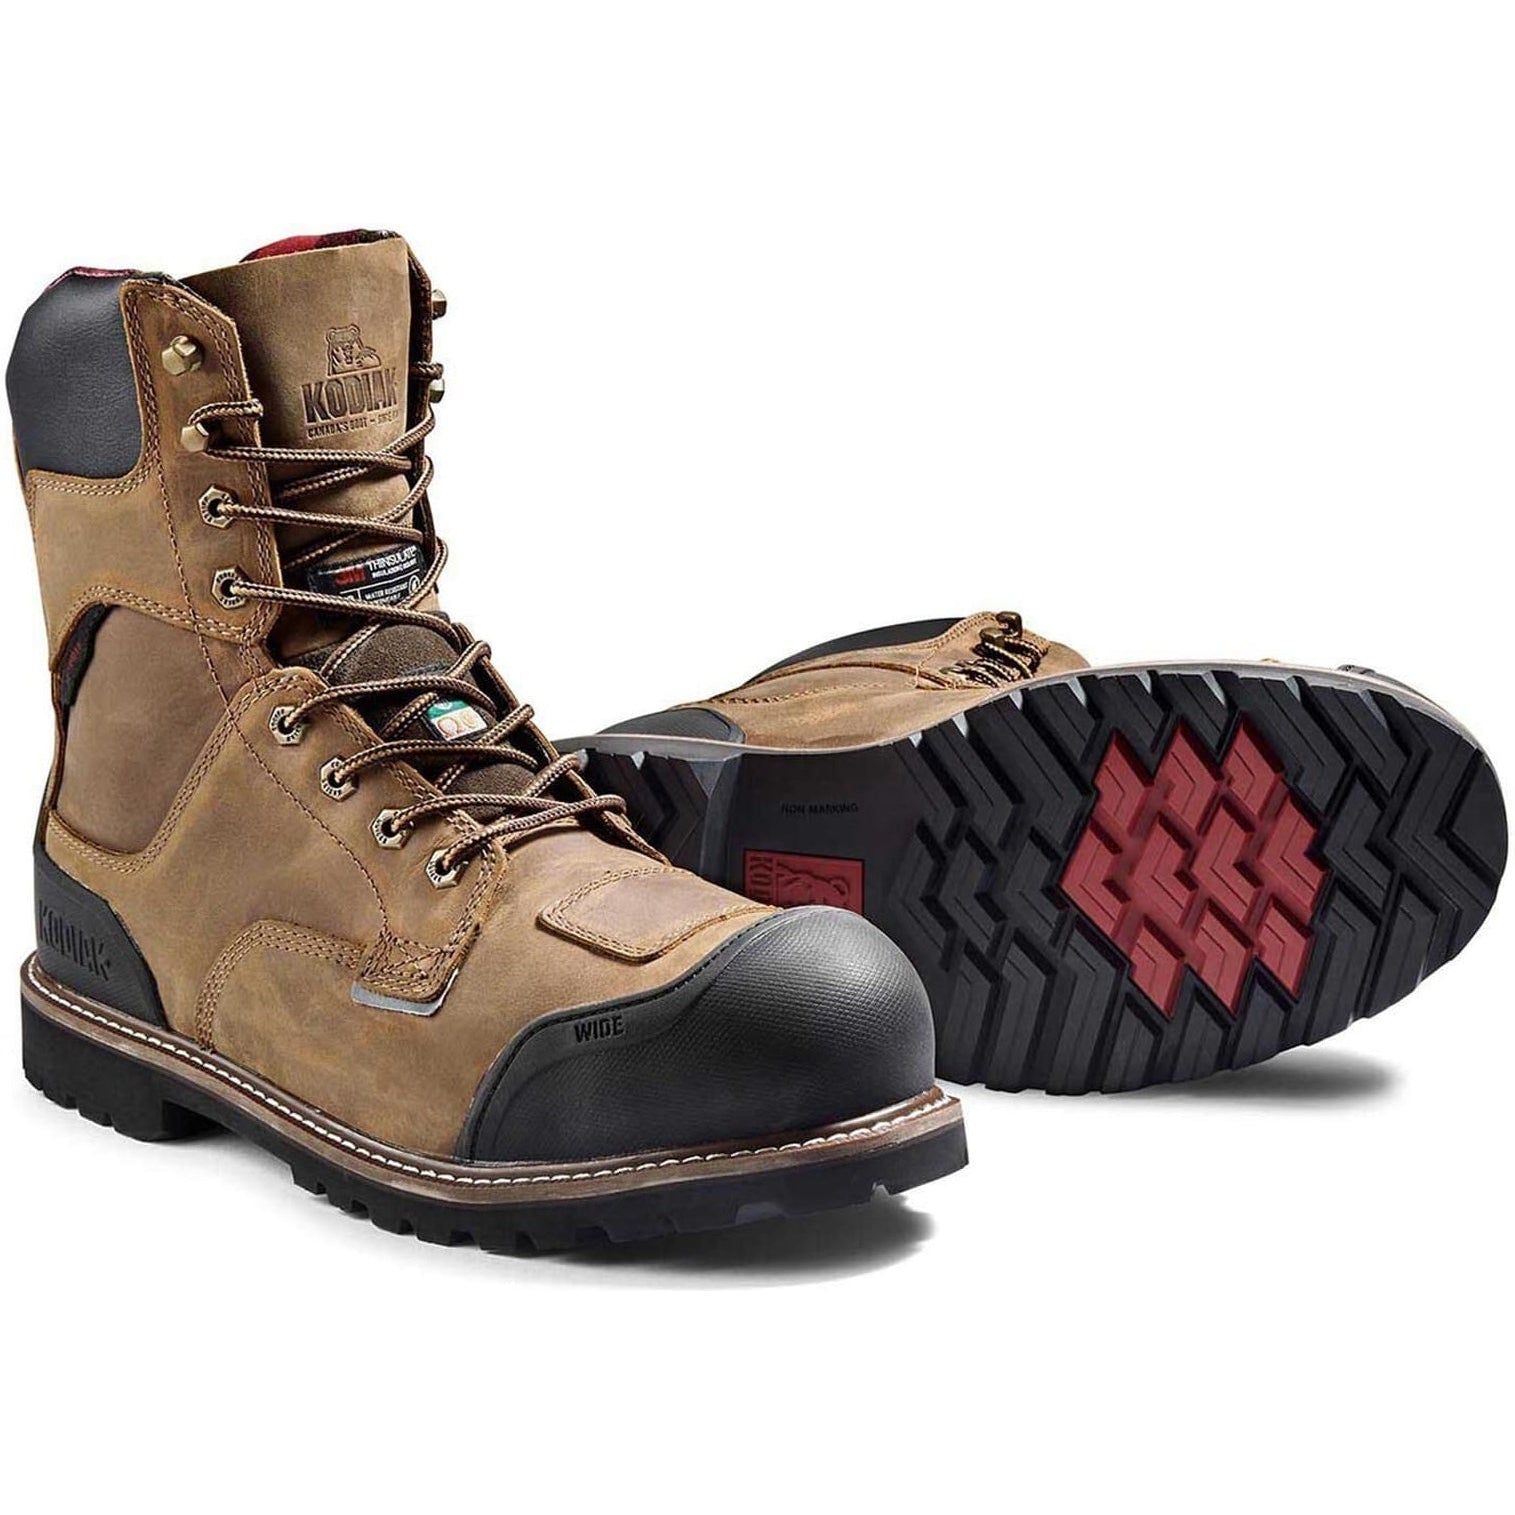 Kodiak Men's Generations Widebody 8" Comp Toe WP Work Boot -Brown- 4TGCBN  - Overlook Boots